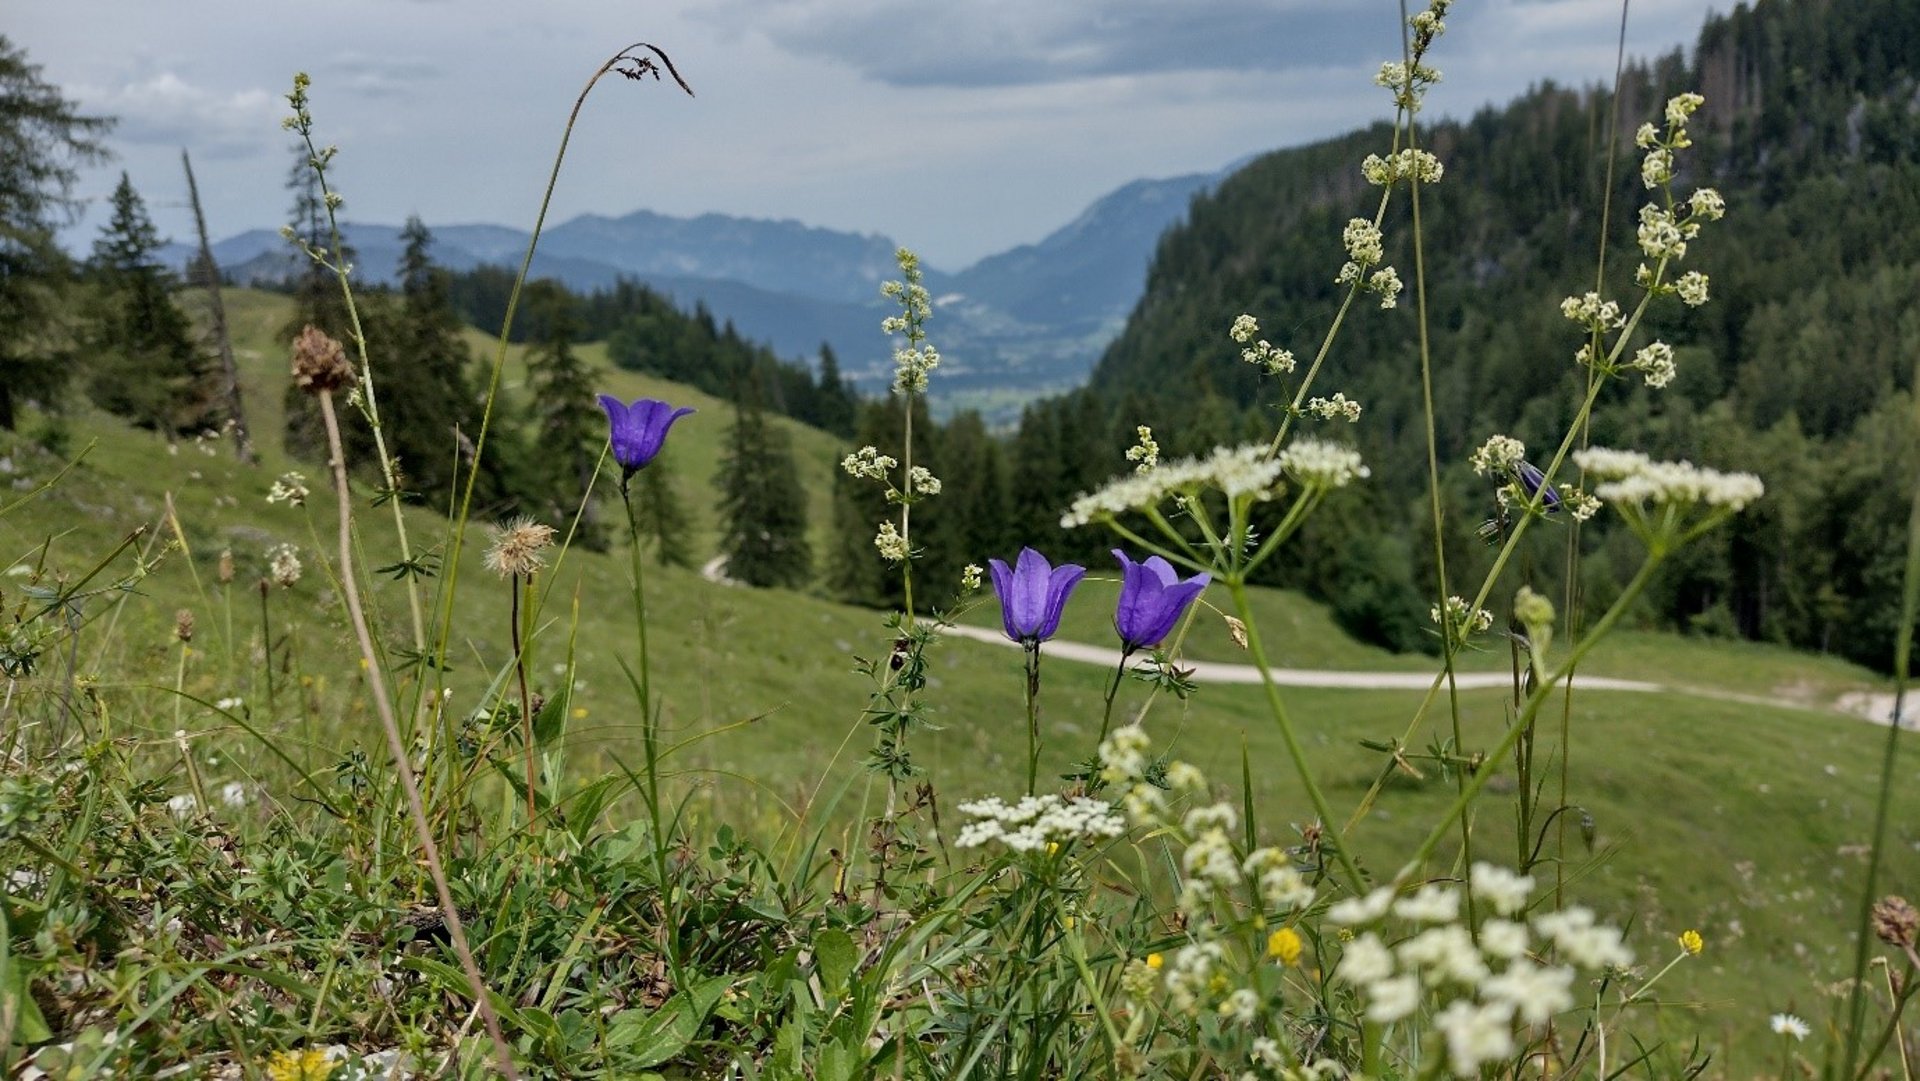 Blick auf die Landschaft im Nationalpark Berchtesgaden.